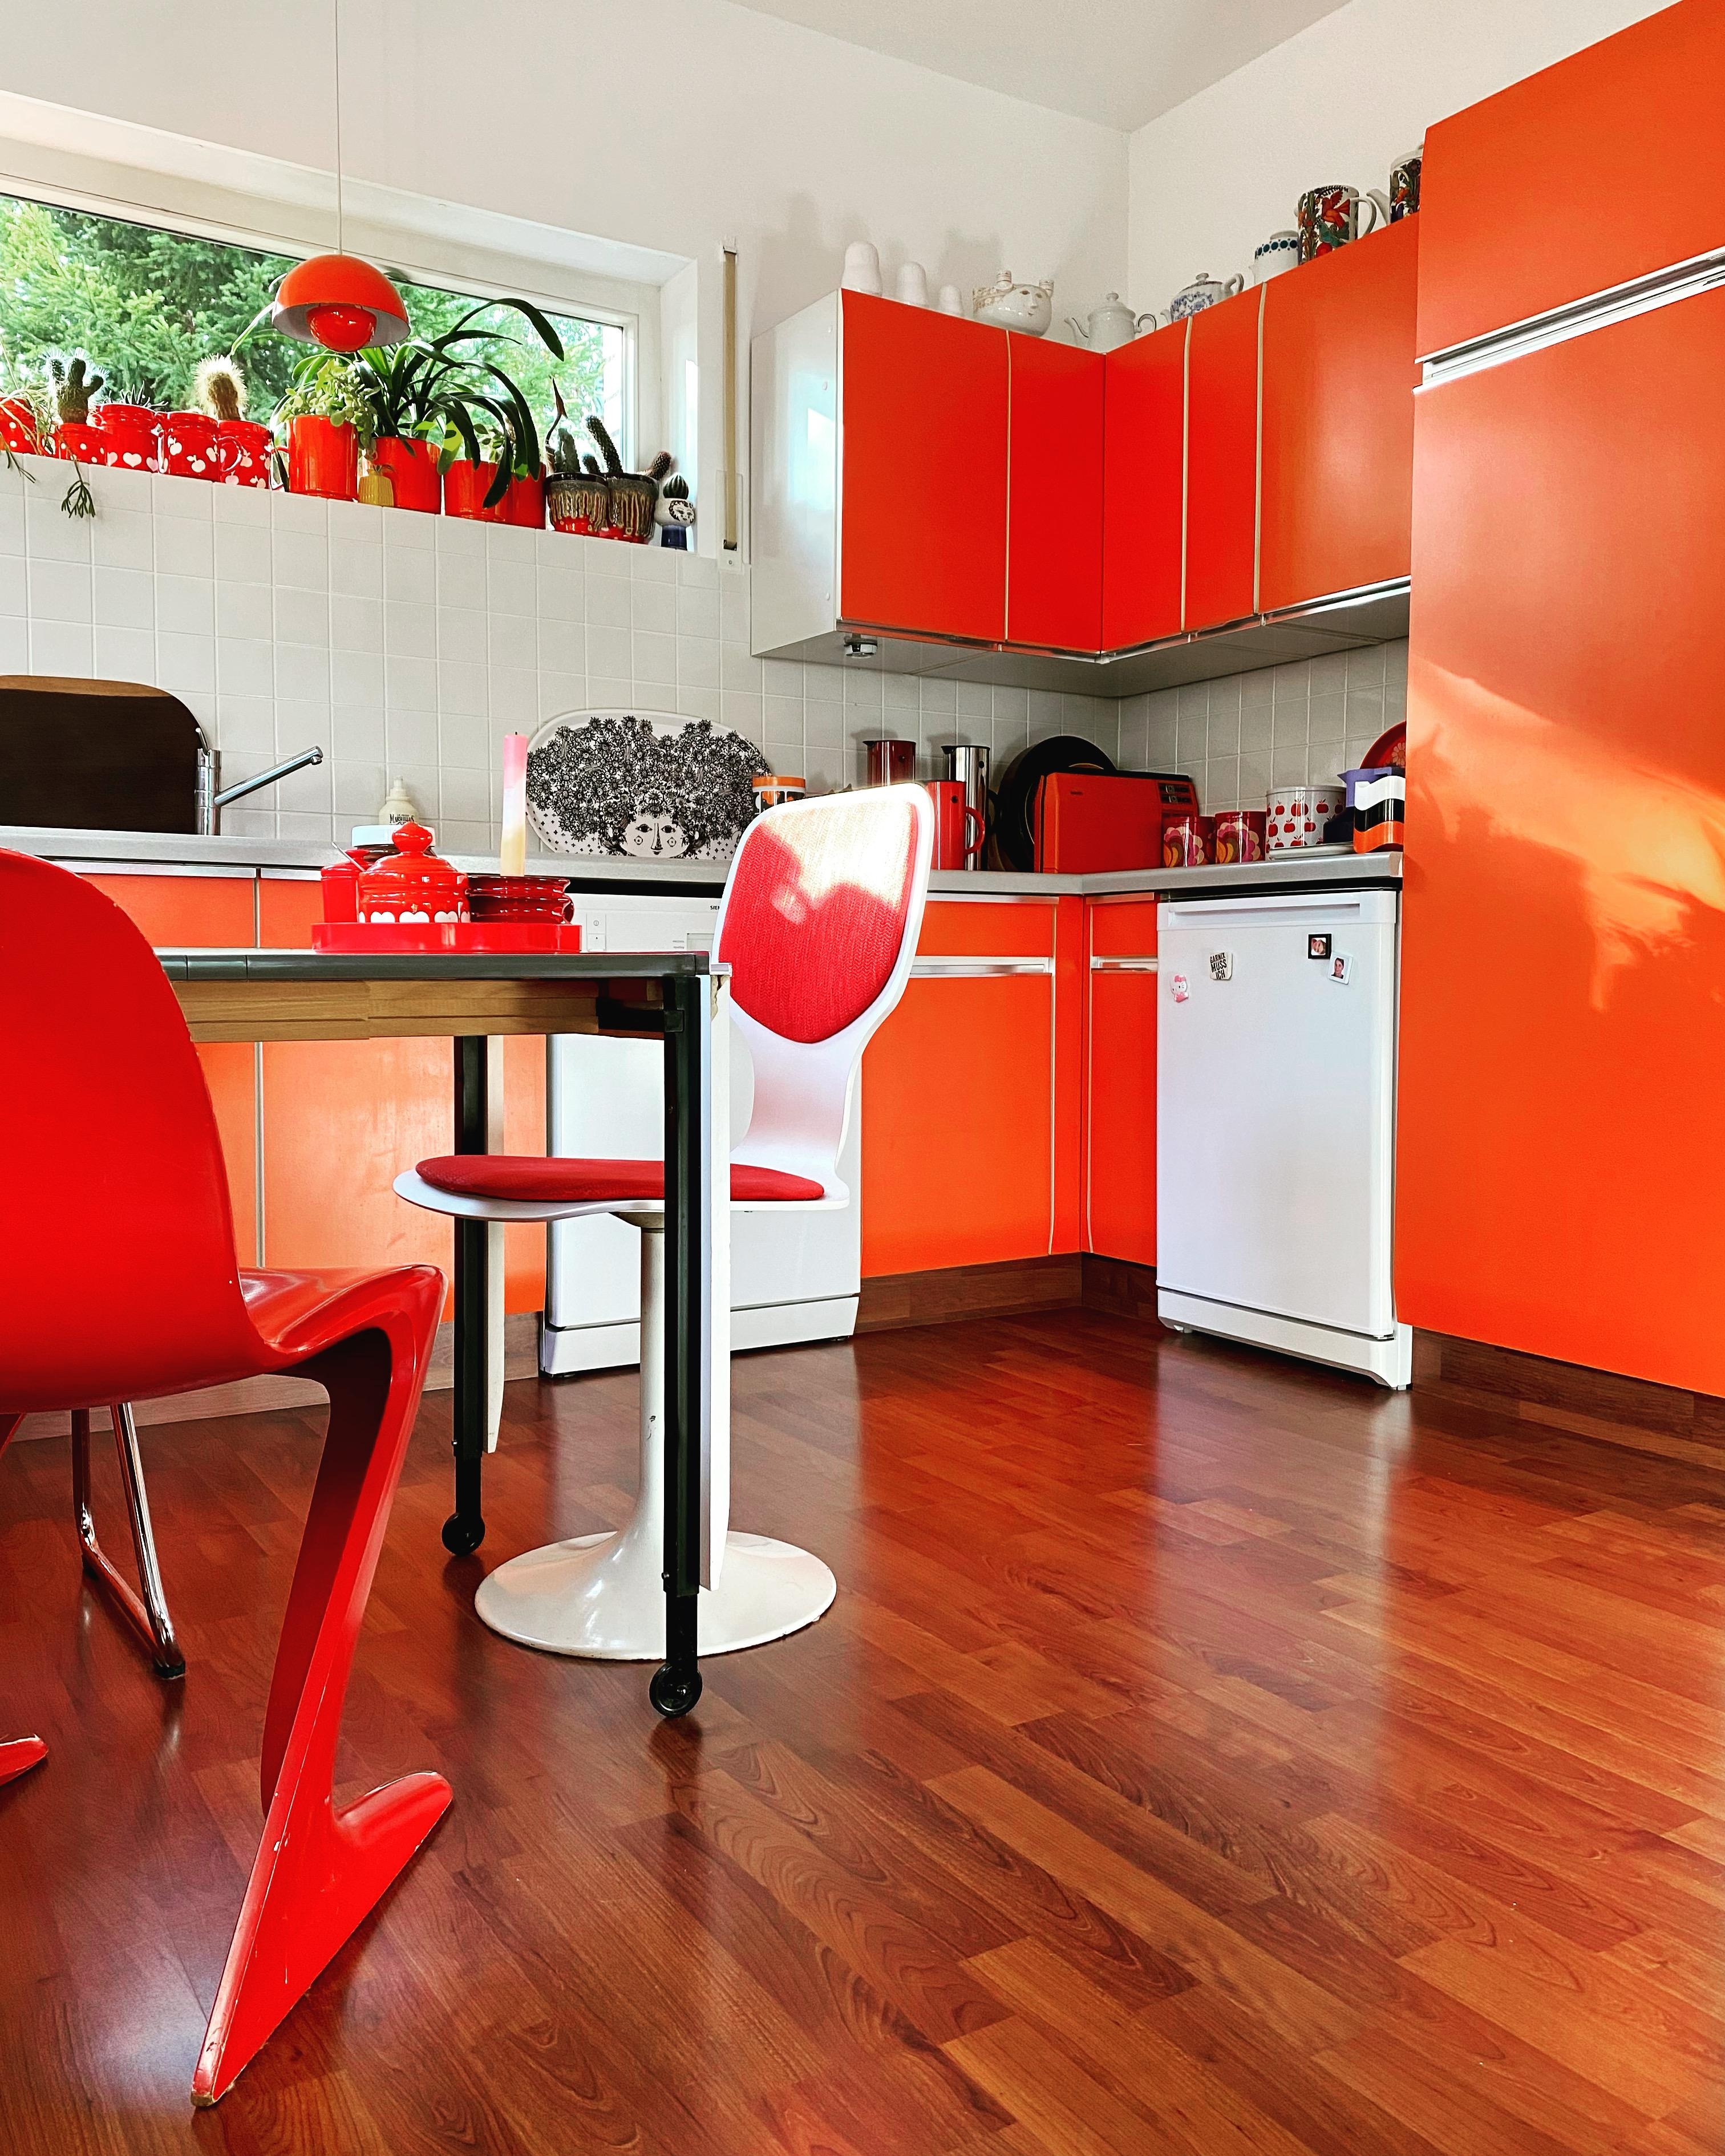 bei der Farbe meiner Küche bekomme ich immer gute Laune
#kitchen #küche #colorful #interior #interiordesign